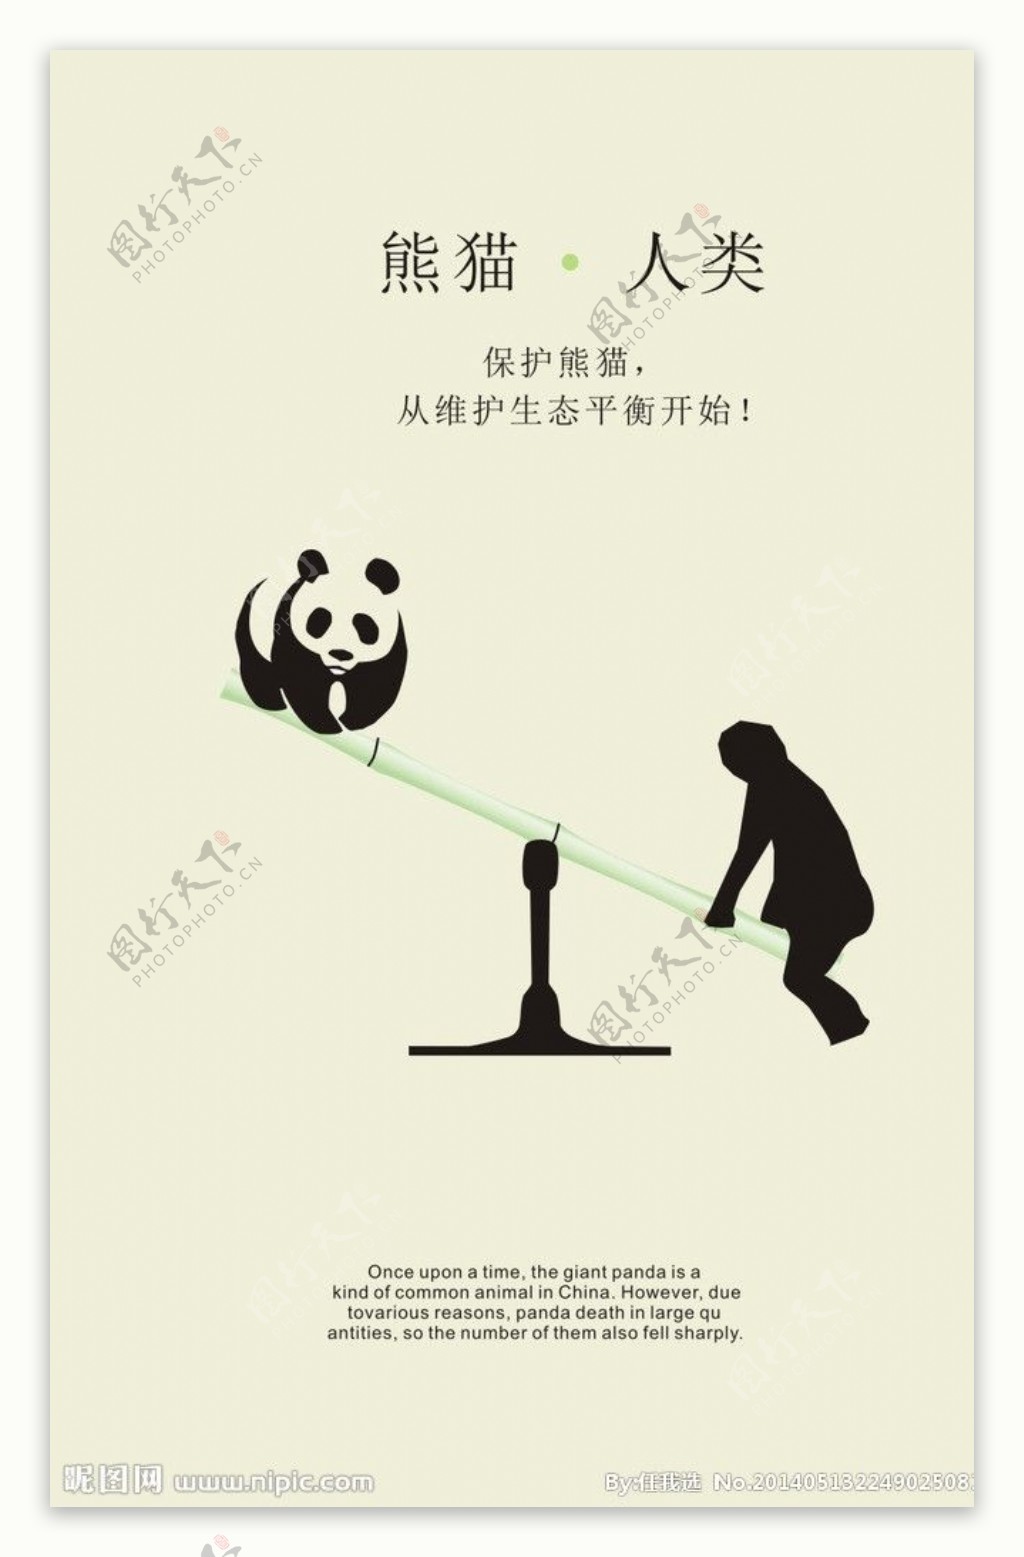 保护熊猫招贴海报图片